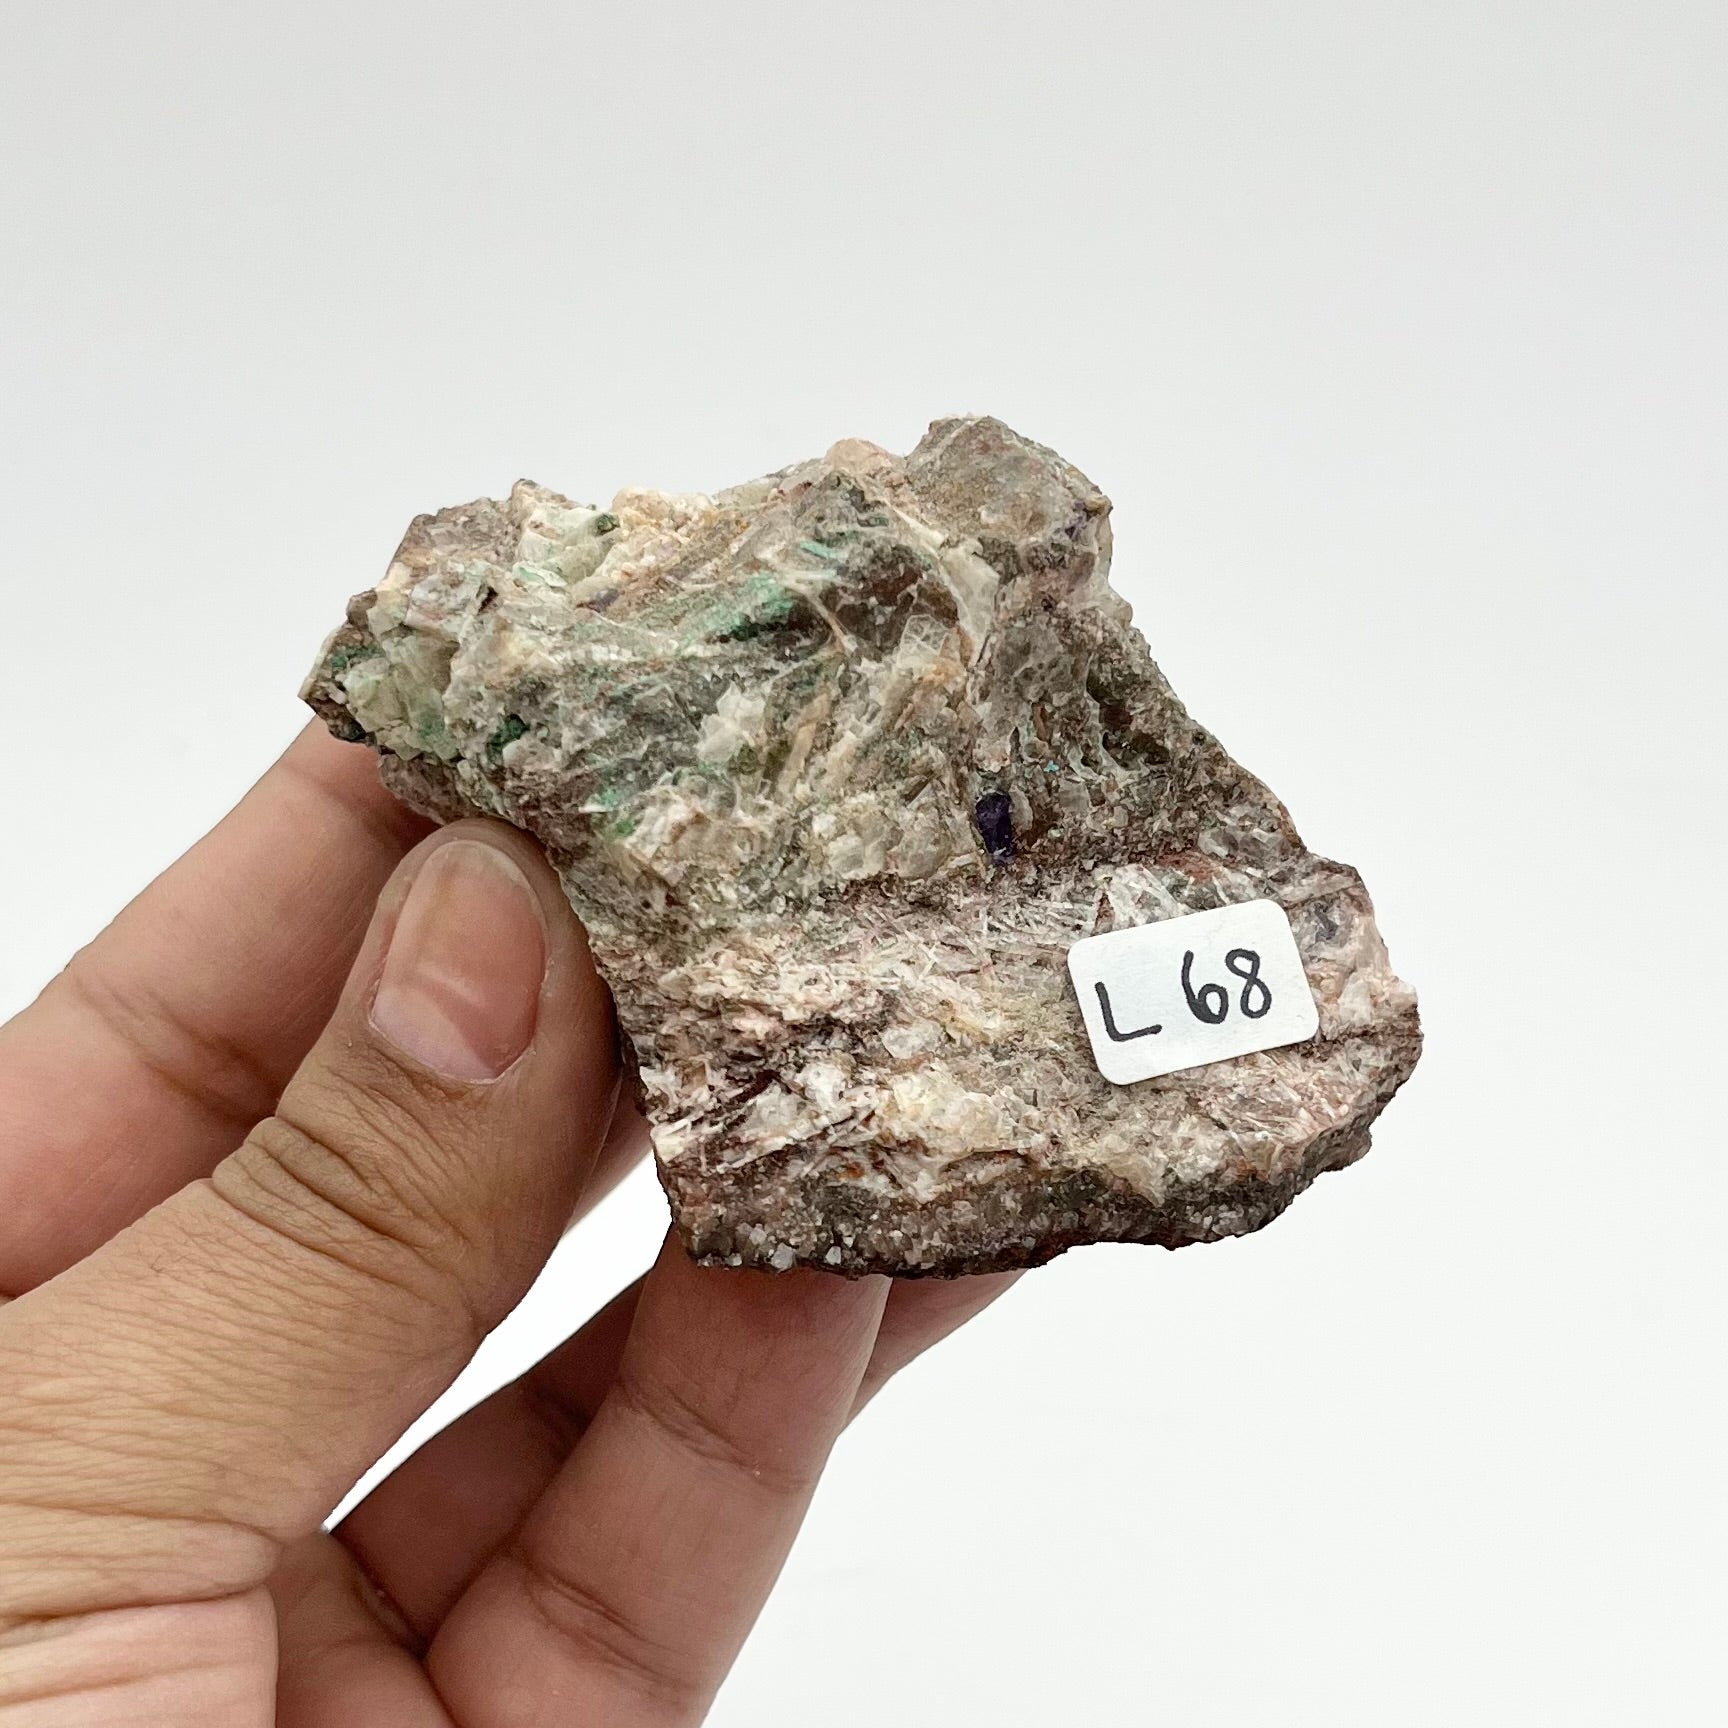 3 Inch Barite/Fluorite/Malachite Specimen L68